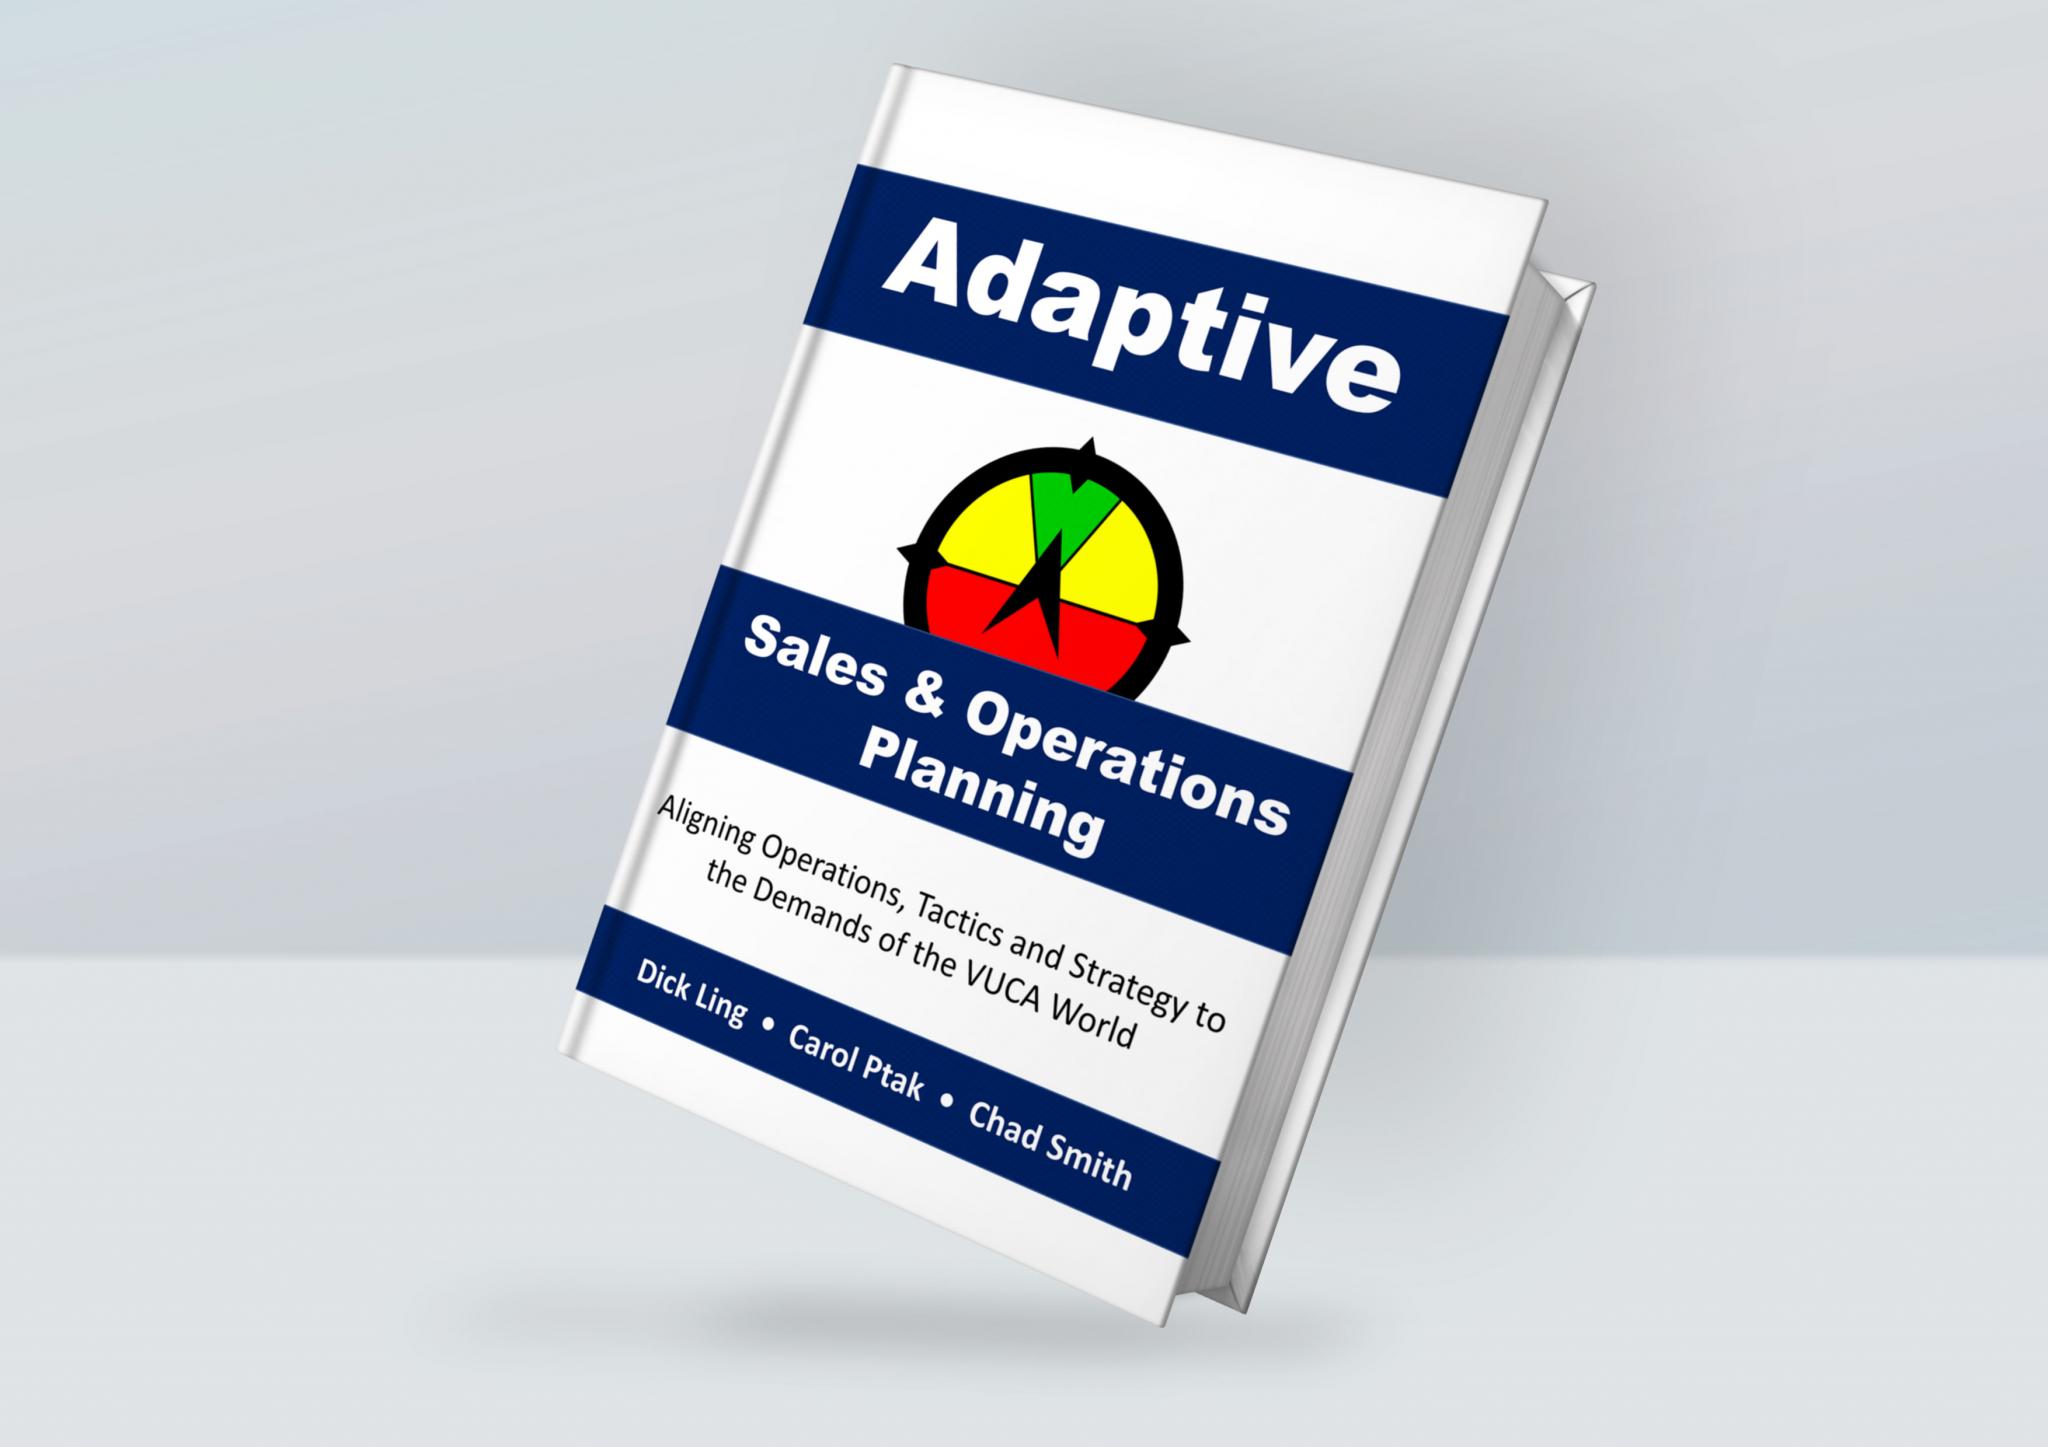 Book_Cover_MockupAdaptiveS&OP